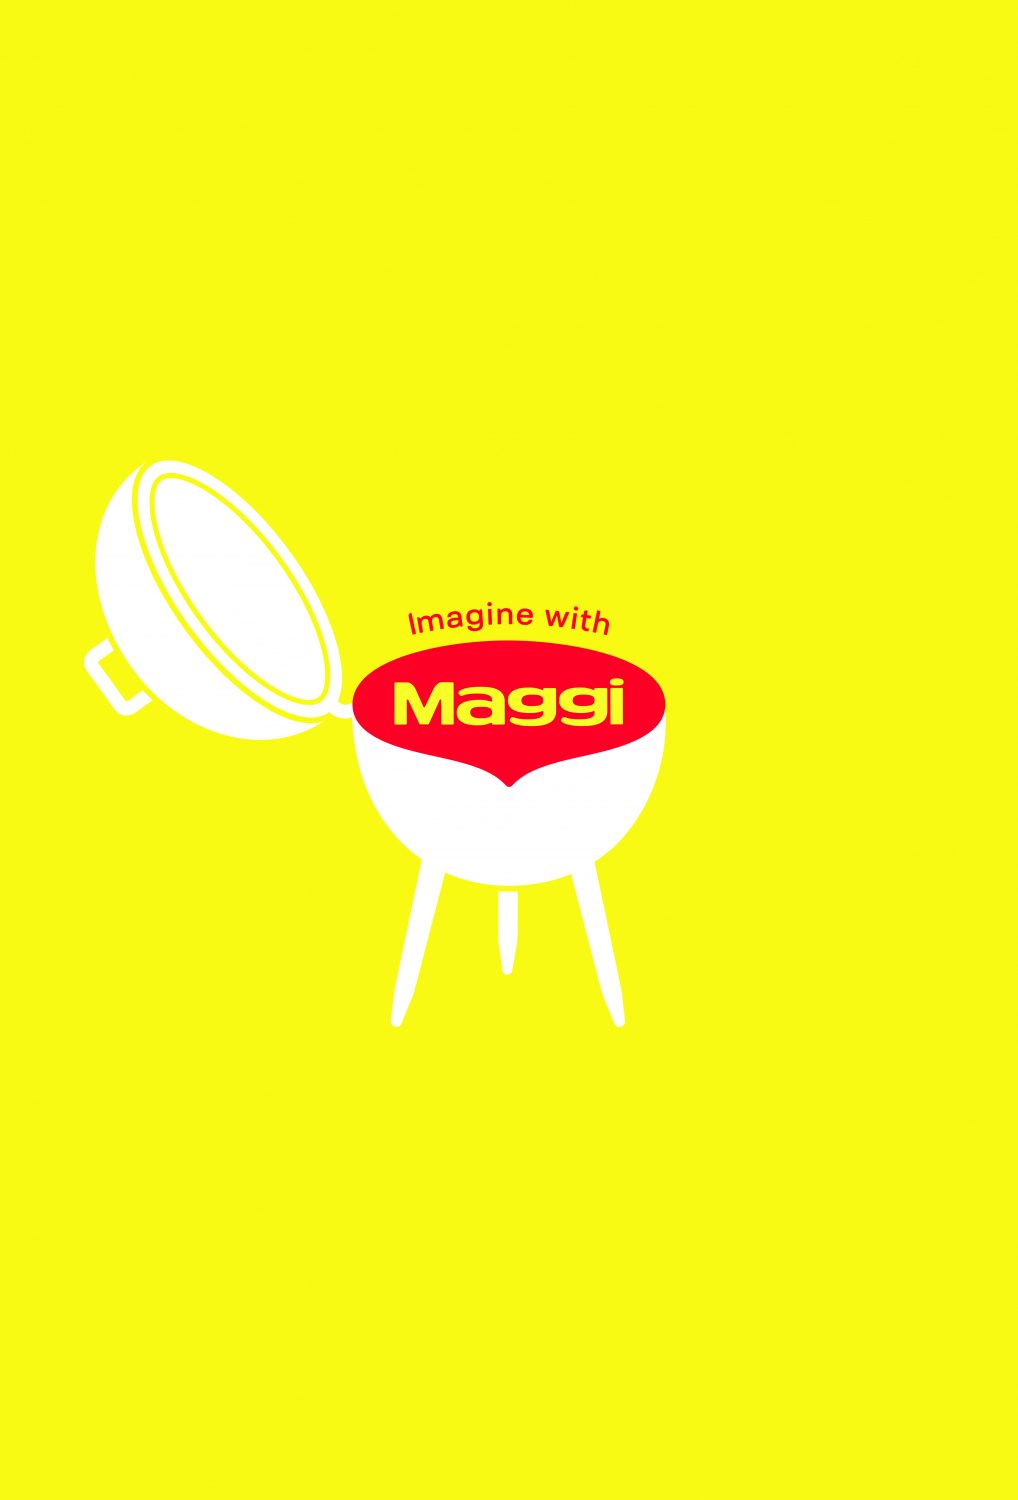 2021-Nestle Maggi-Imagine With Maggi-Poster 05-Publicis Brazil–jpg